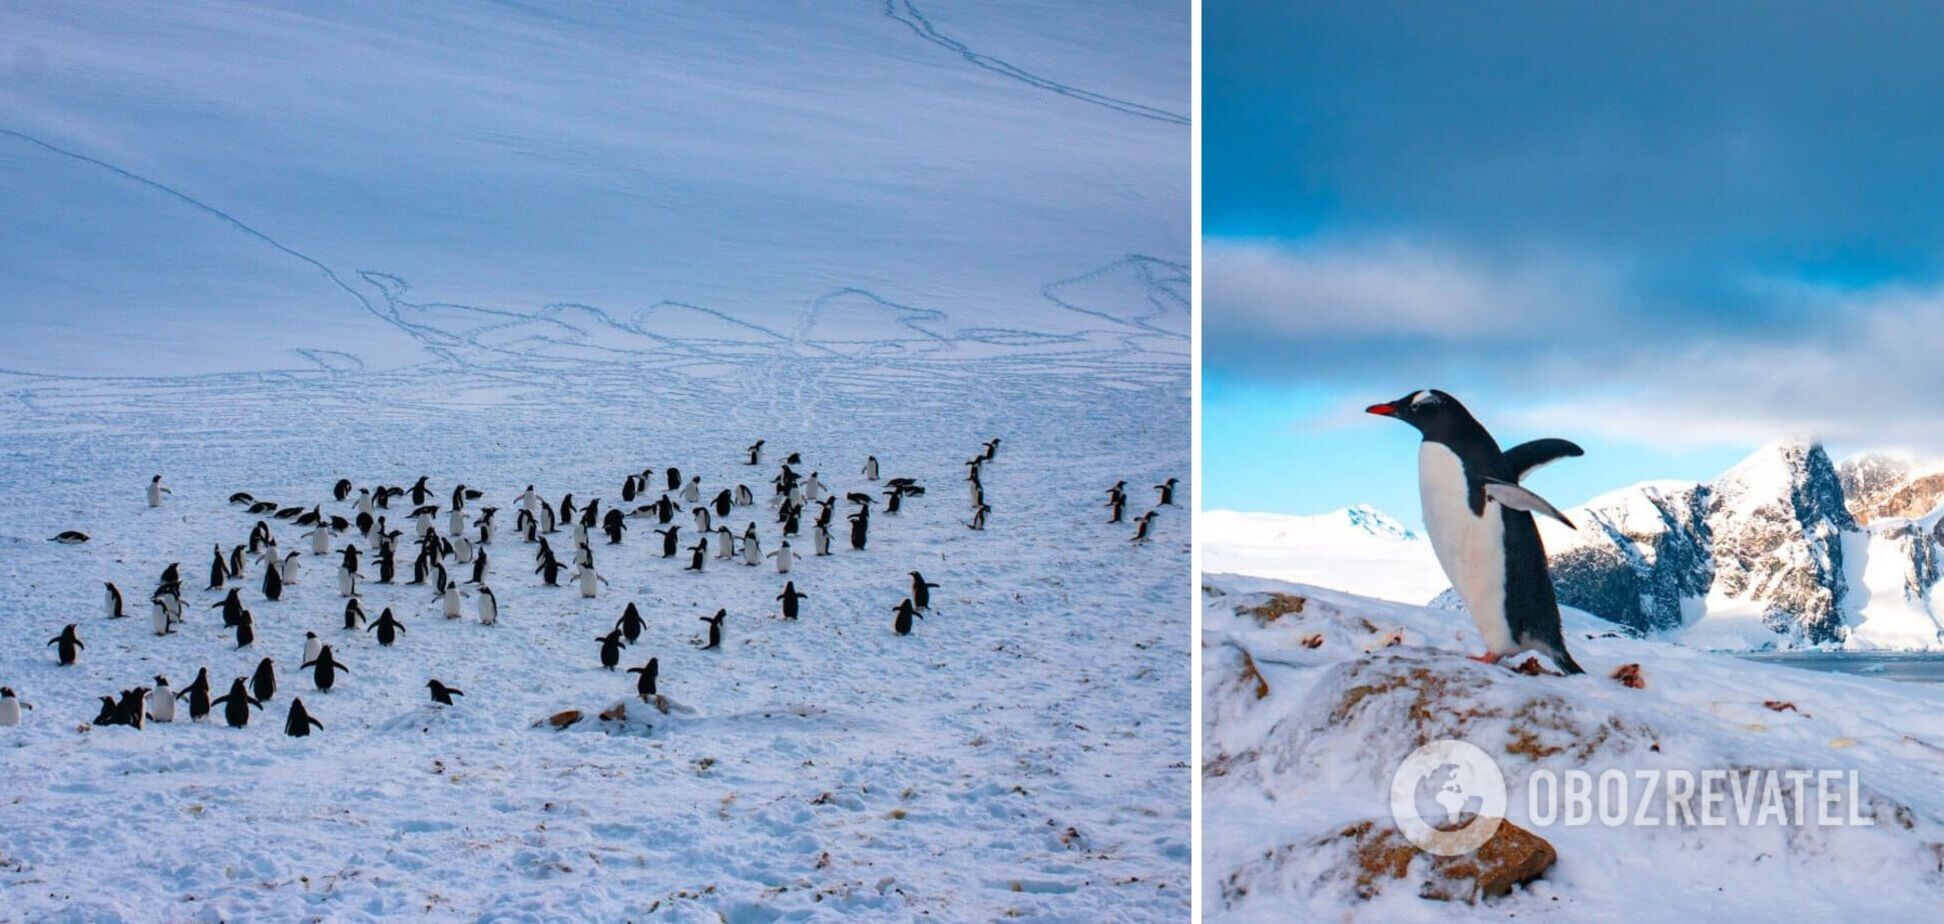 Станцию 'Академик Вернадский' оккупировали пингвины для гнездования. Фото